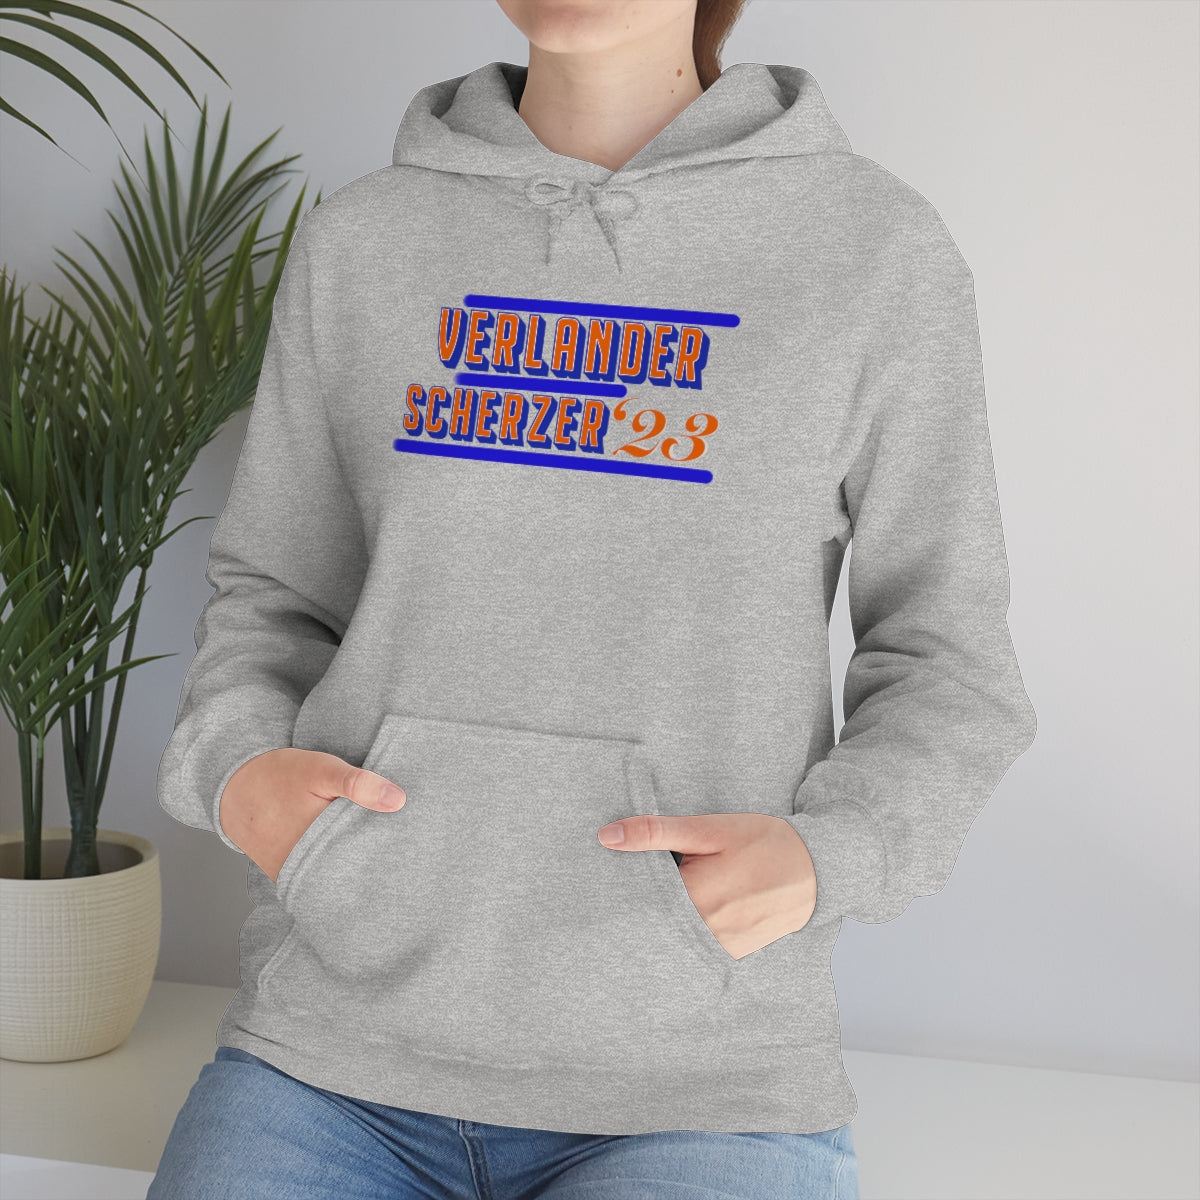 Mets Scherzer Verlander ‘23 Sweatshirt - IsGoodBrand